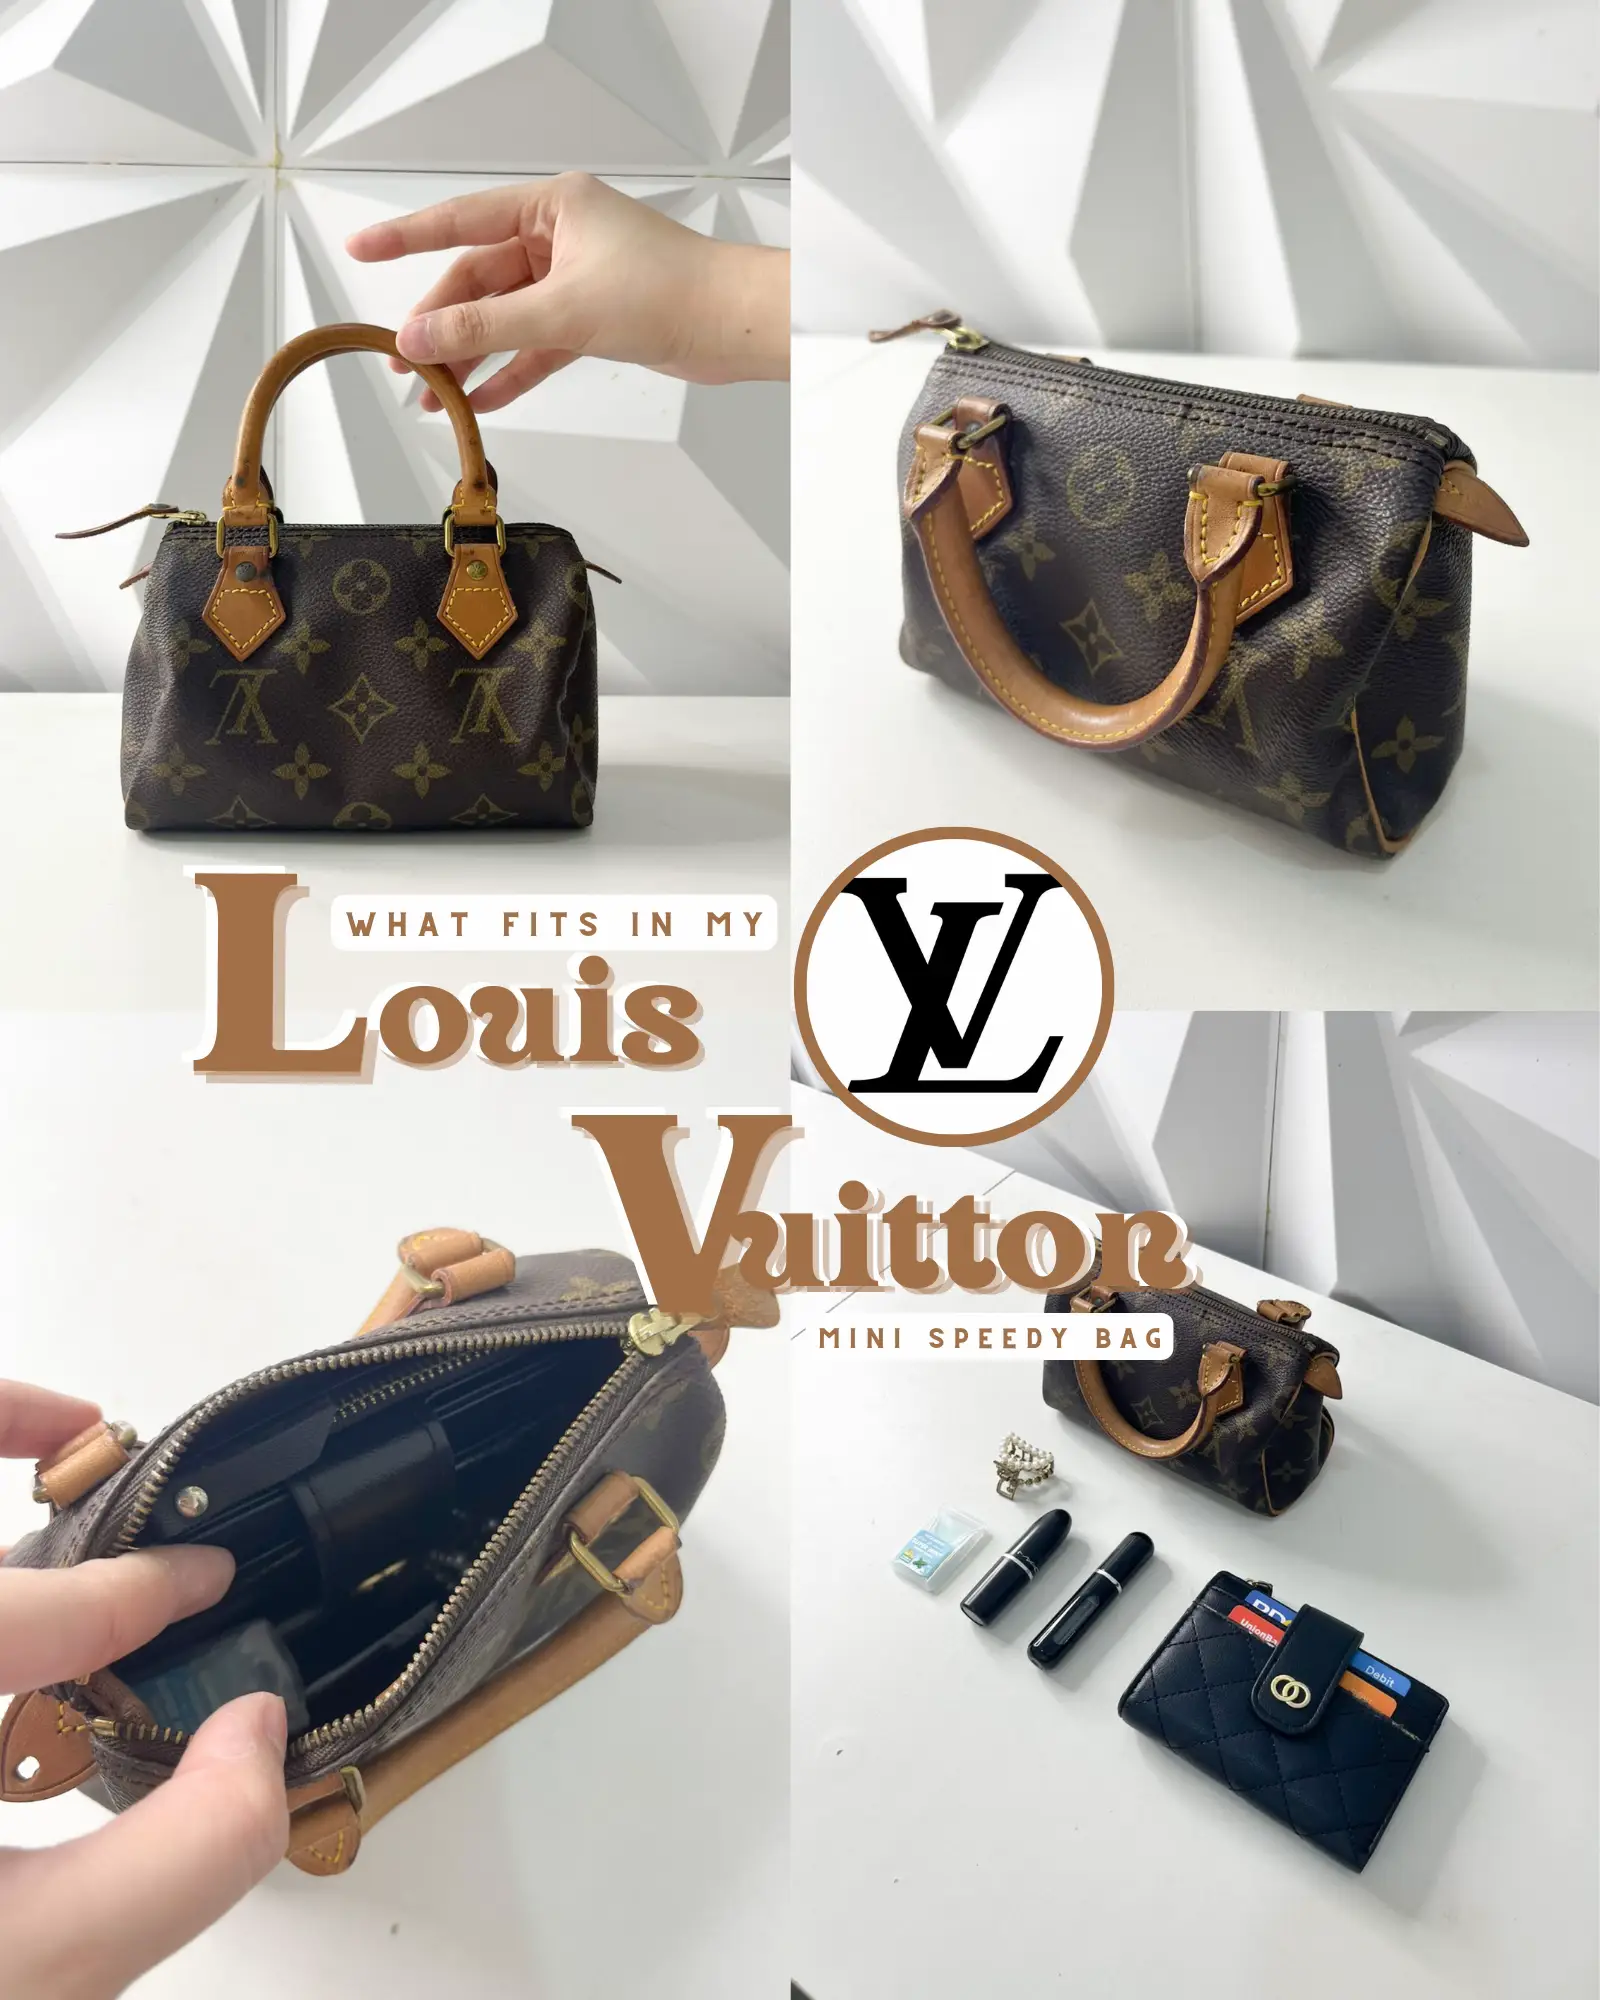 What's in my Louis Vuitton Petite Malle Souple Bag #LVbag